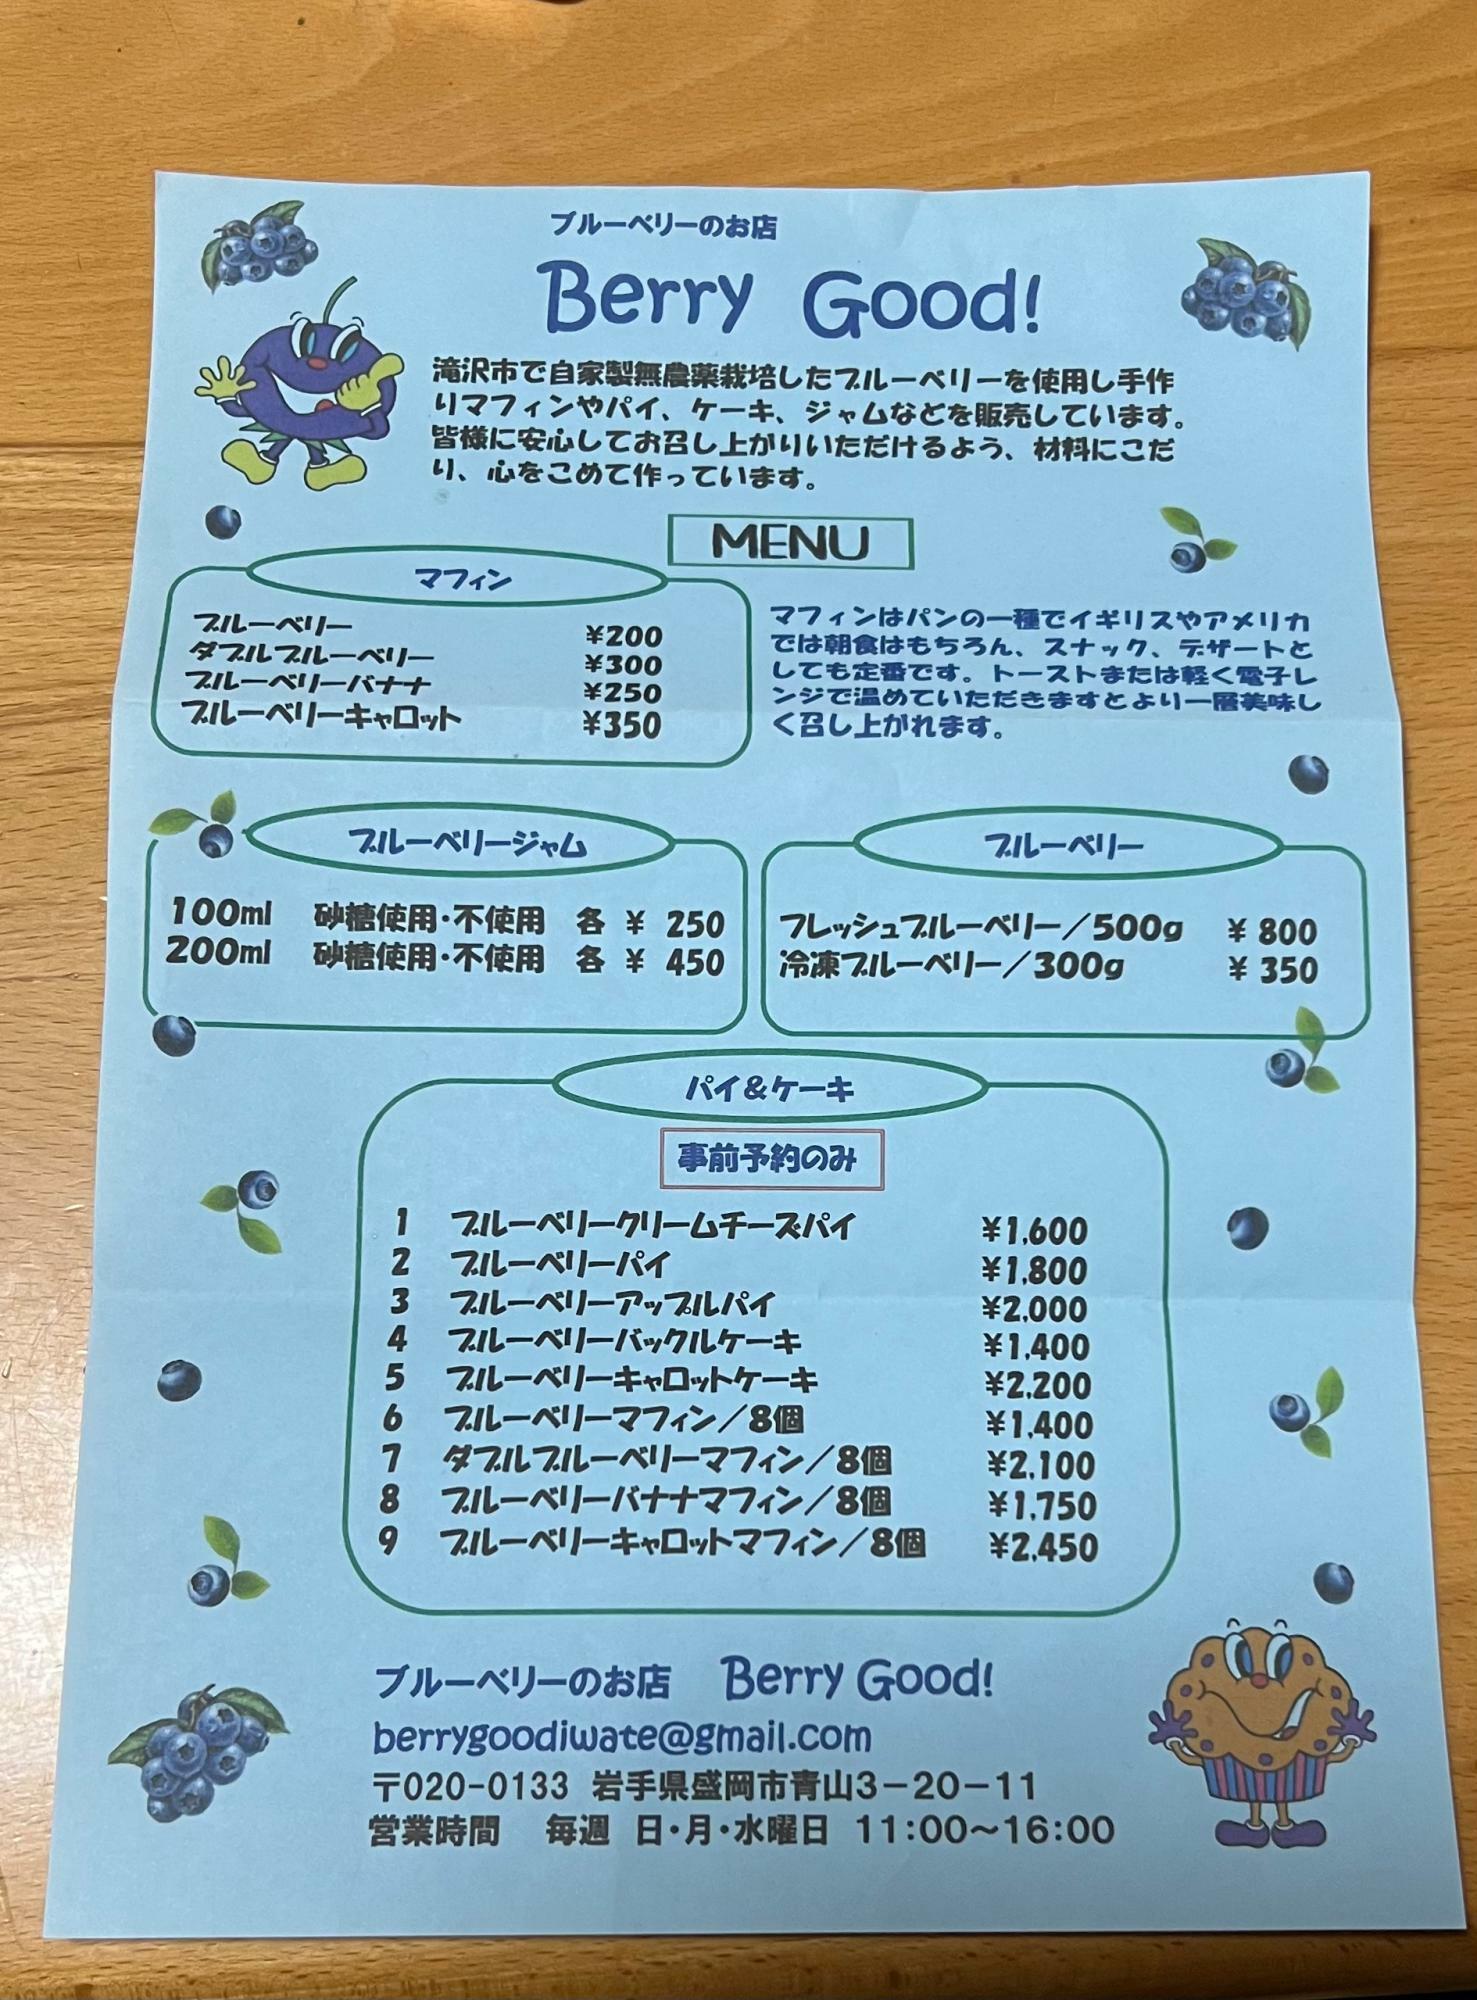 ブルーベリーマフィンが200円、ブルーベリーアップルパイが350円でした。